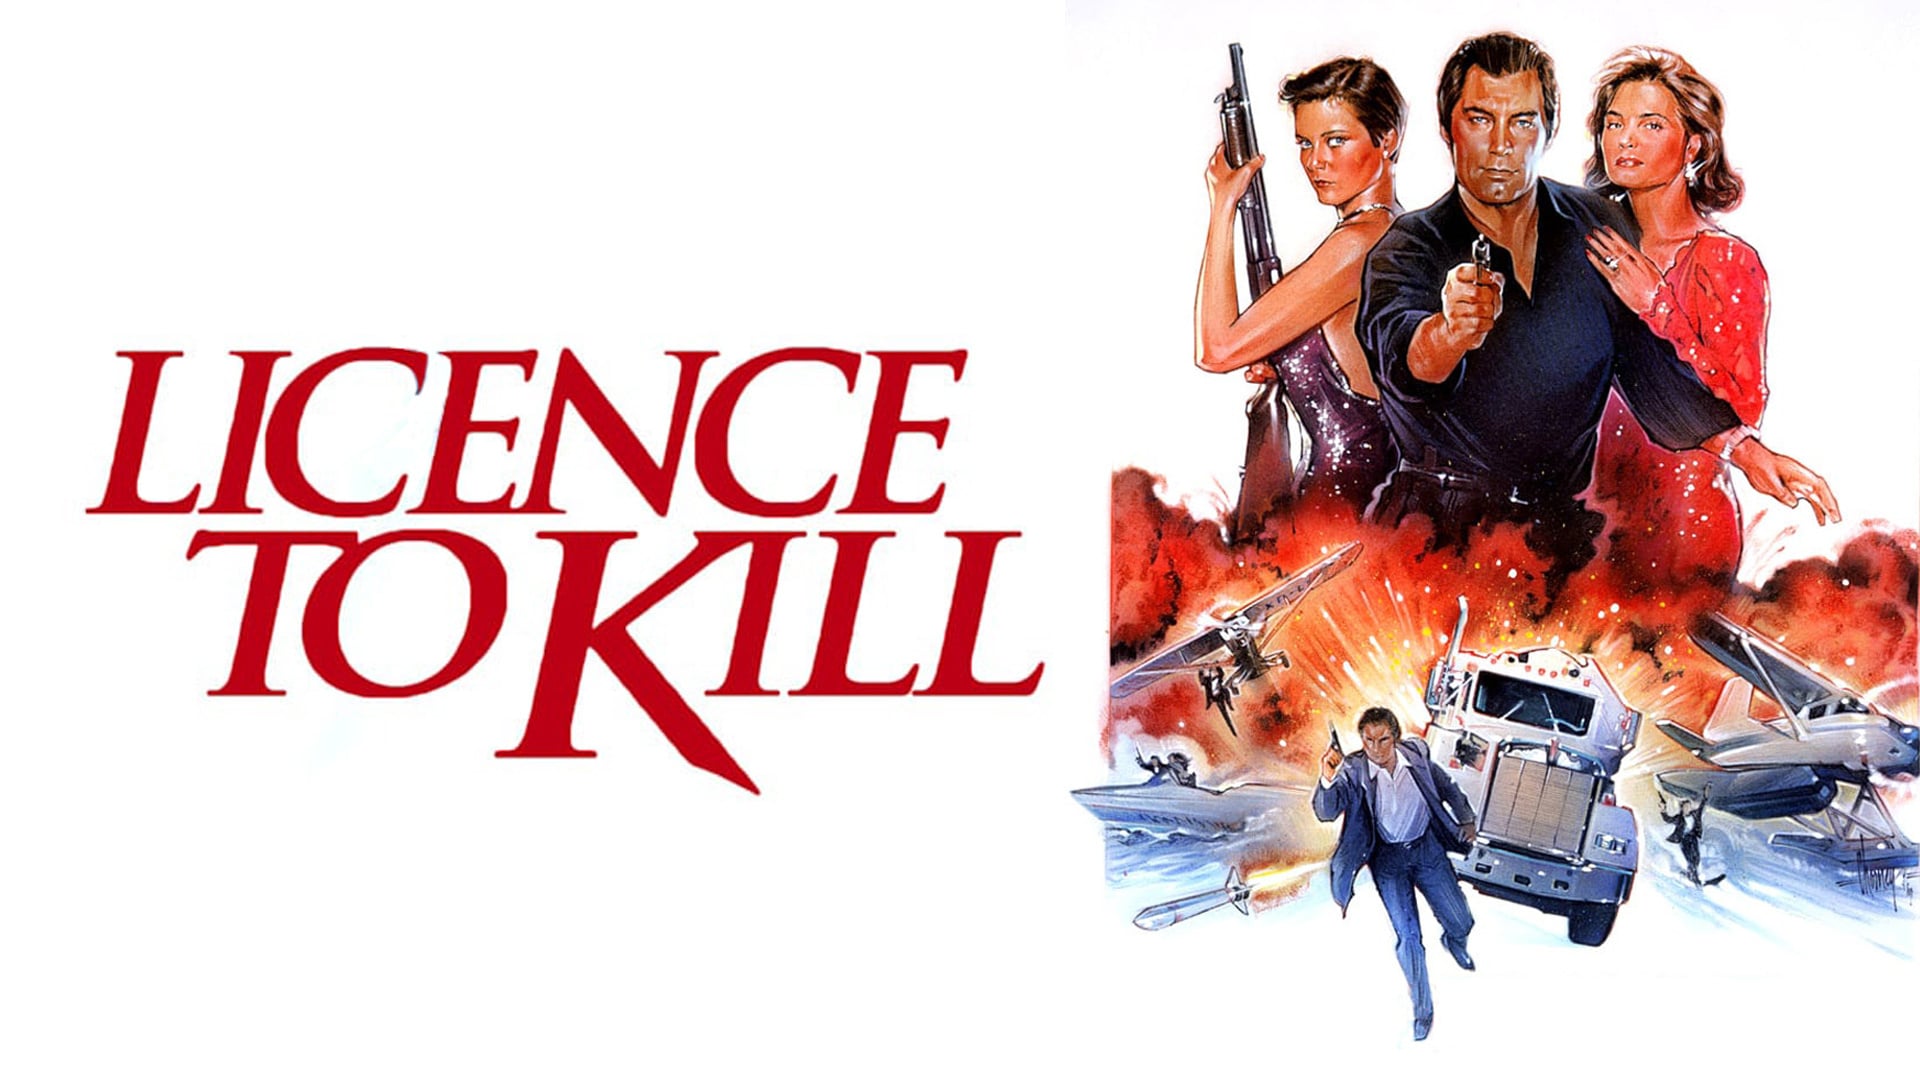 7 license. Лицензия на убийство 1989. 007: Licence to Kill. 007 Лицензия на убийство. Агент 007 лицензия на убийство.